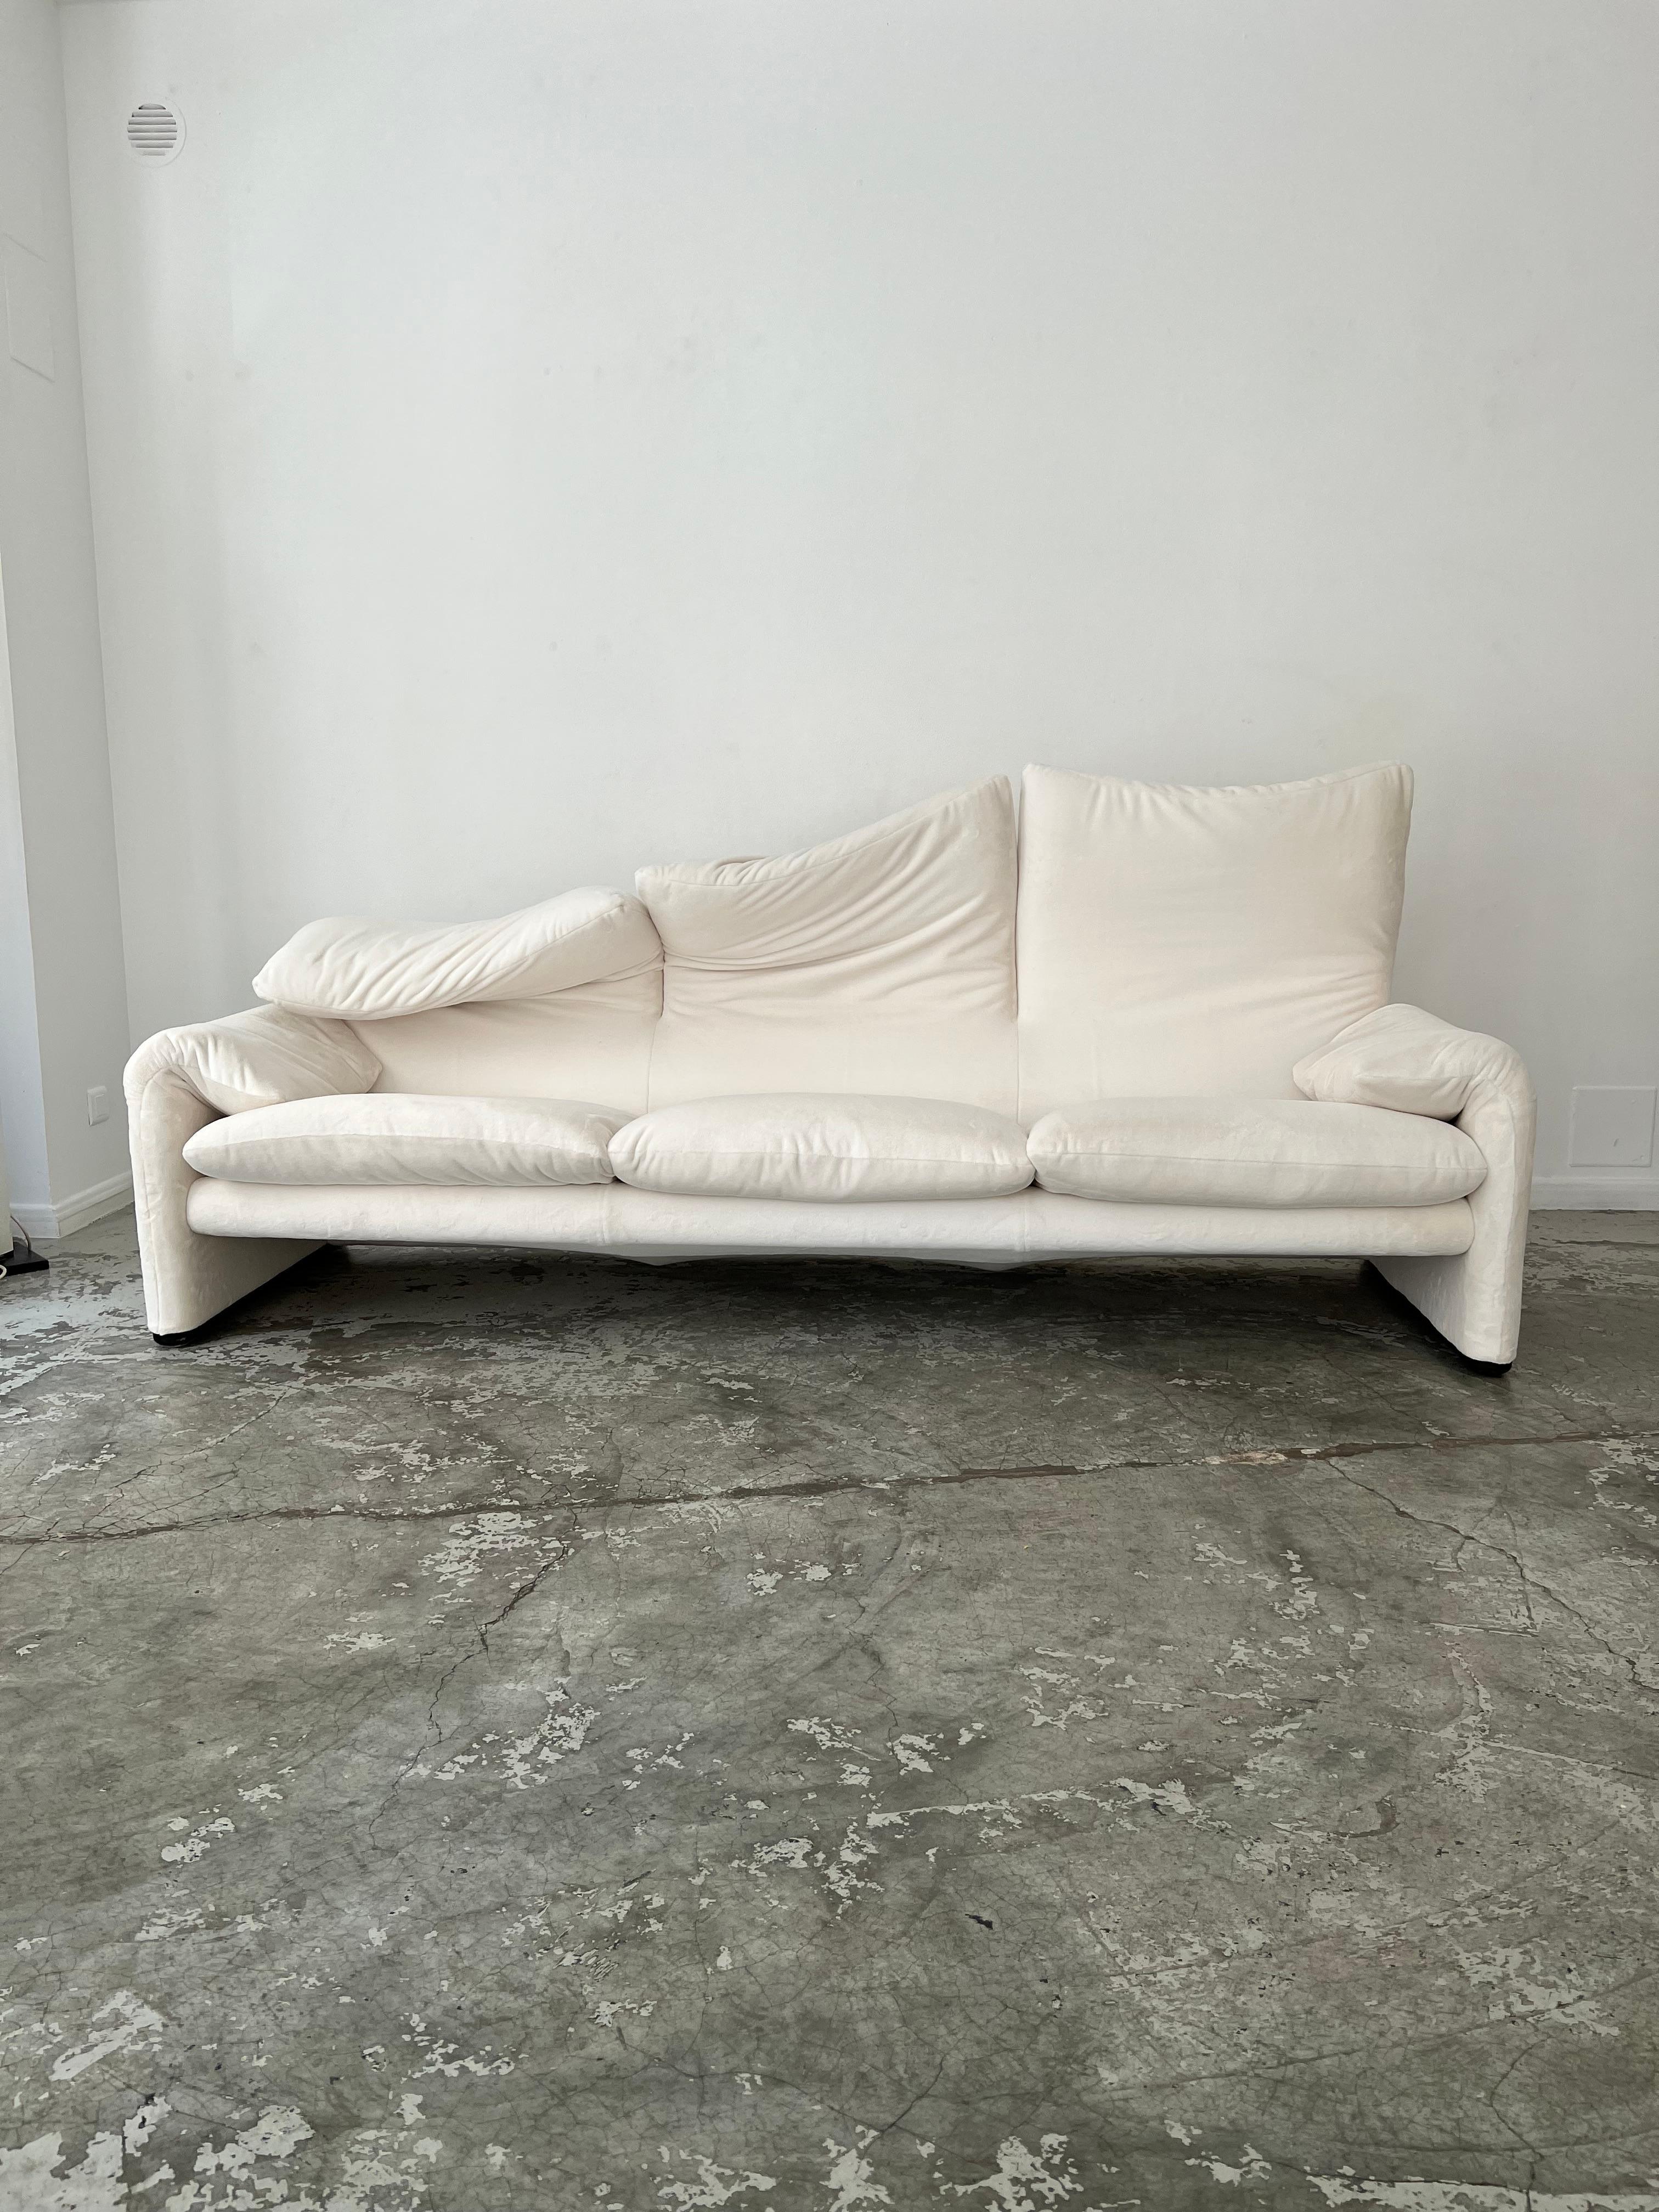 Das Maralunga-Sofa wurde 1973 von Vico Magistretti für die italienische Firma Cassina entworfen. Bekannt für seine Kreationen in einfachen, essentiellen Formen und unter Verwendung von für die damalige Zeit innovativen MATERIALEN, ging er zahlreiche